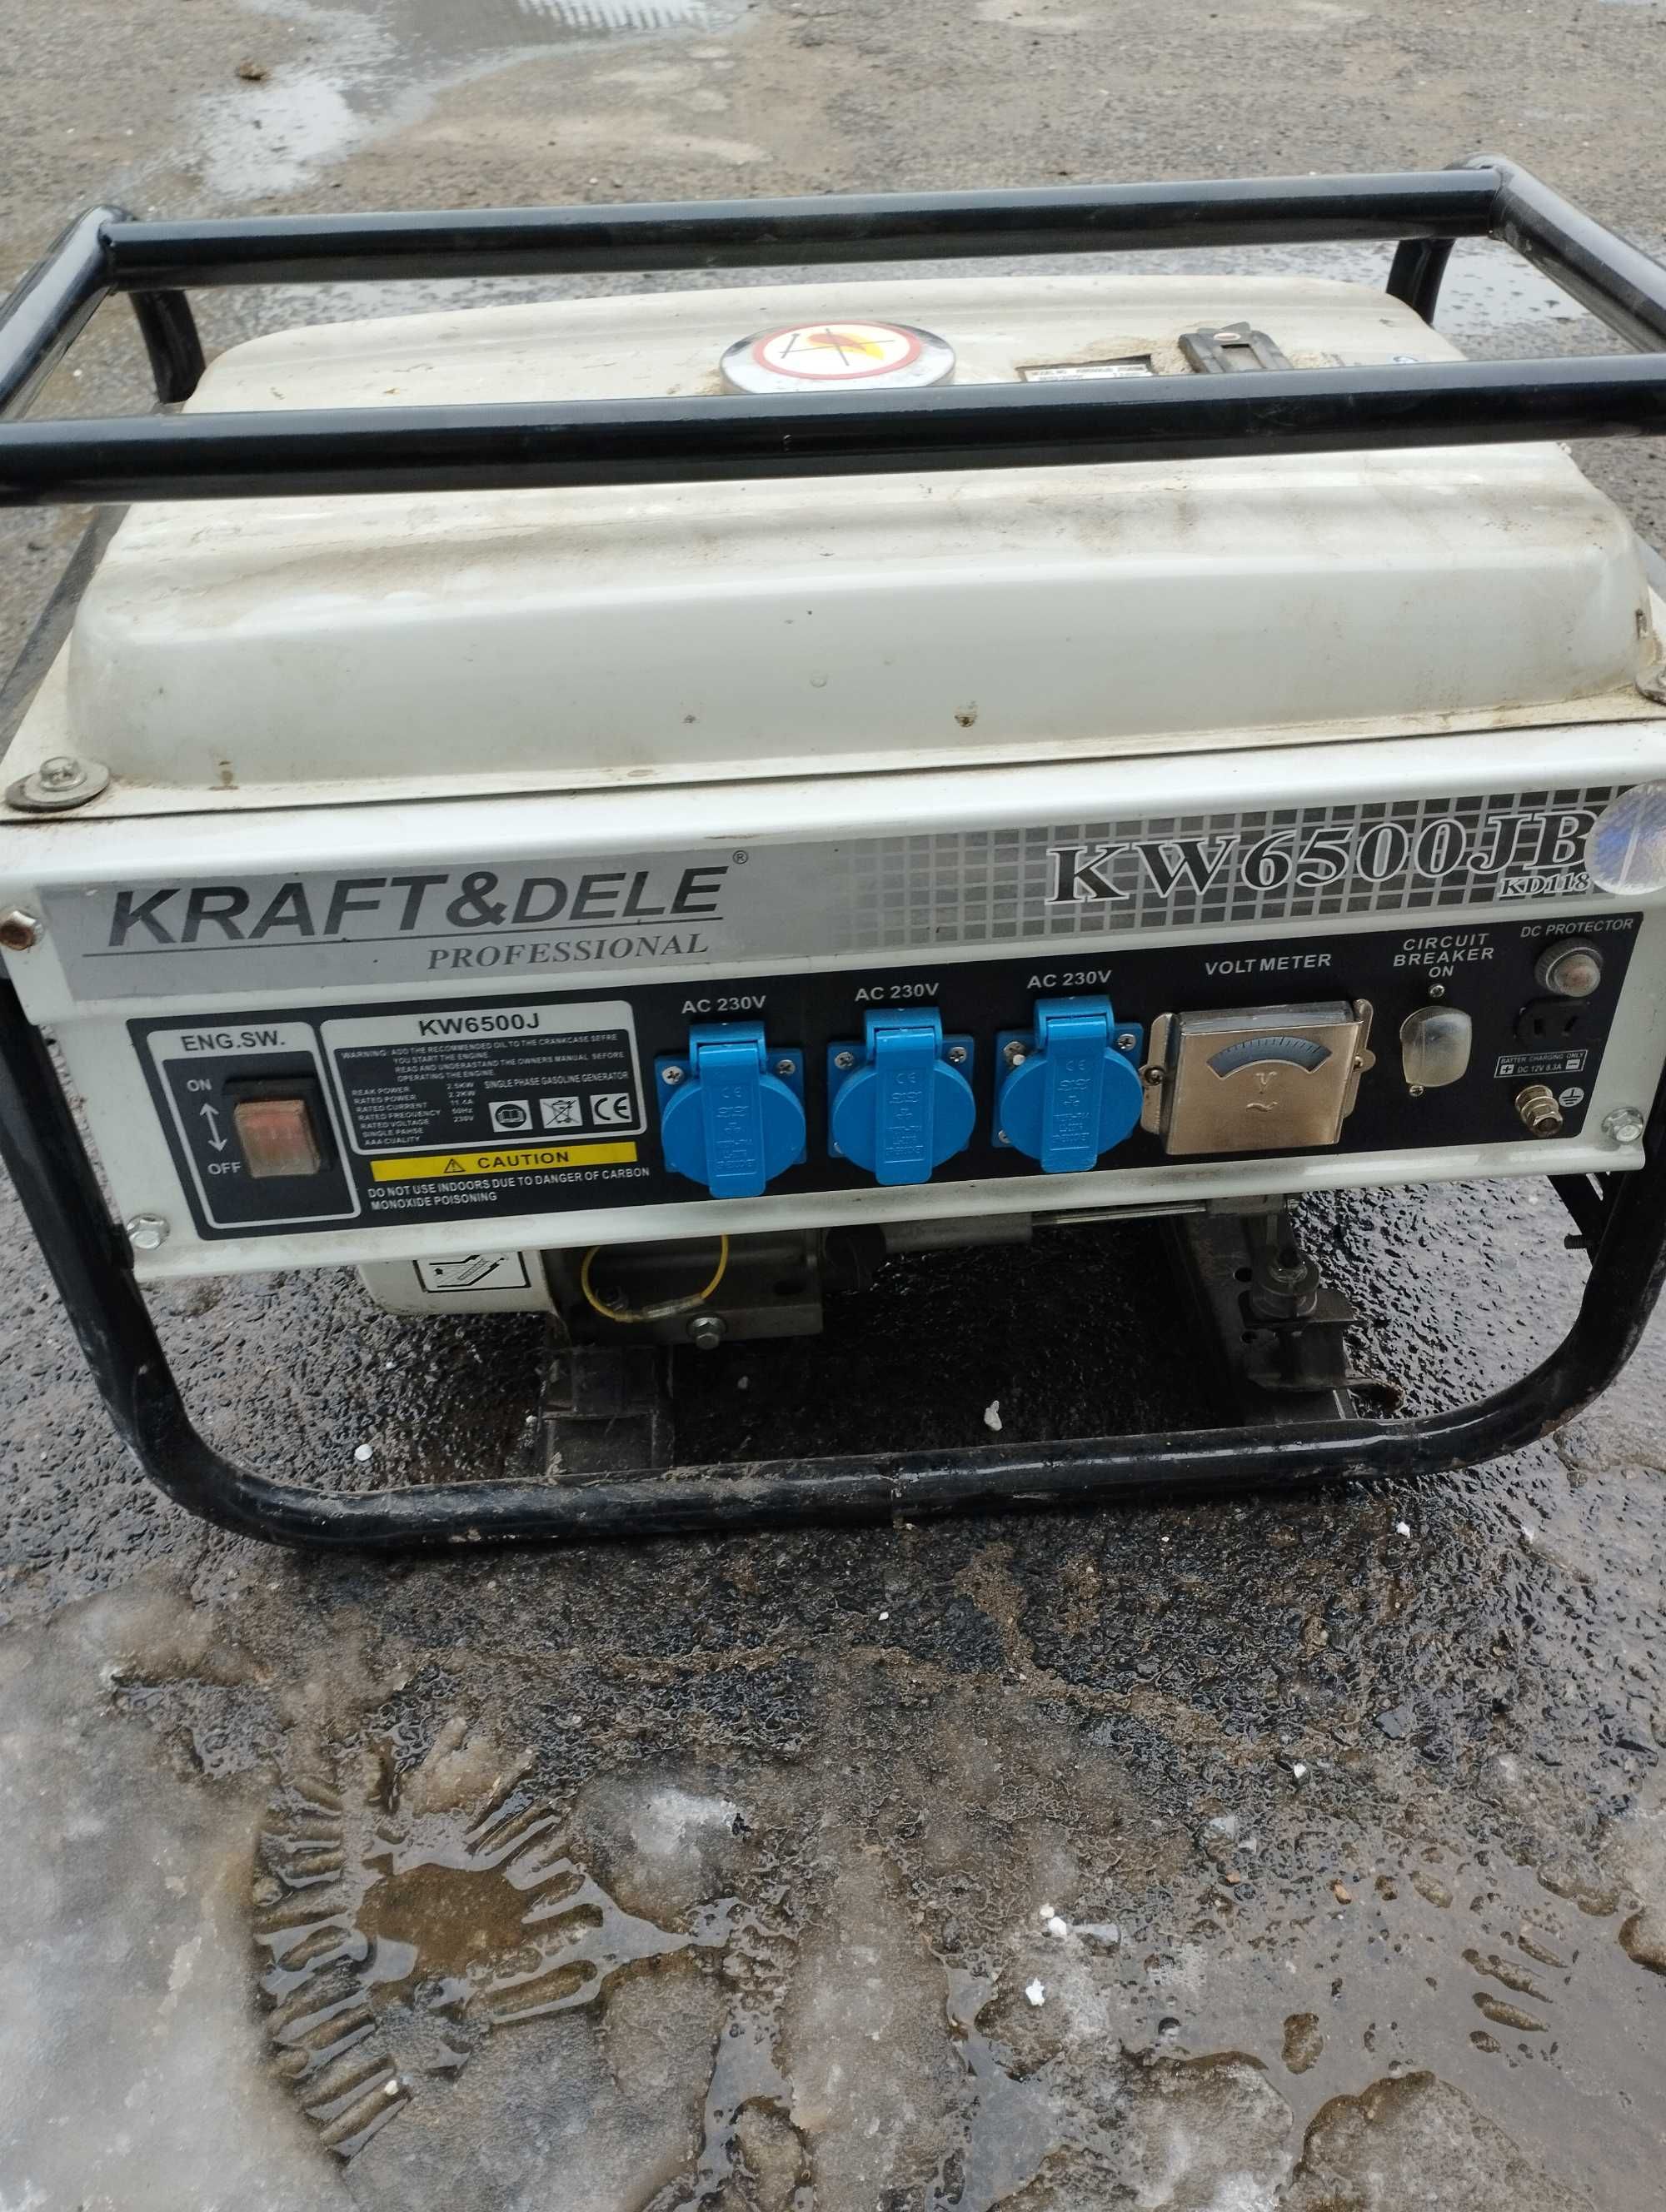 Sprzedam agregat prądotwórczy Kraft & Dele 2500W, KW 6500JB